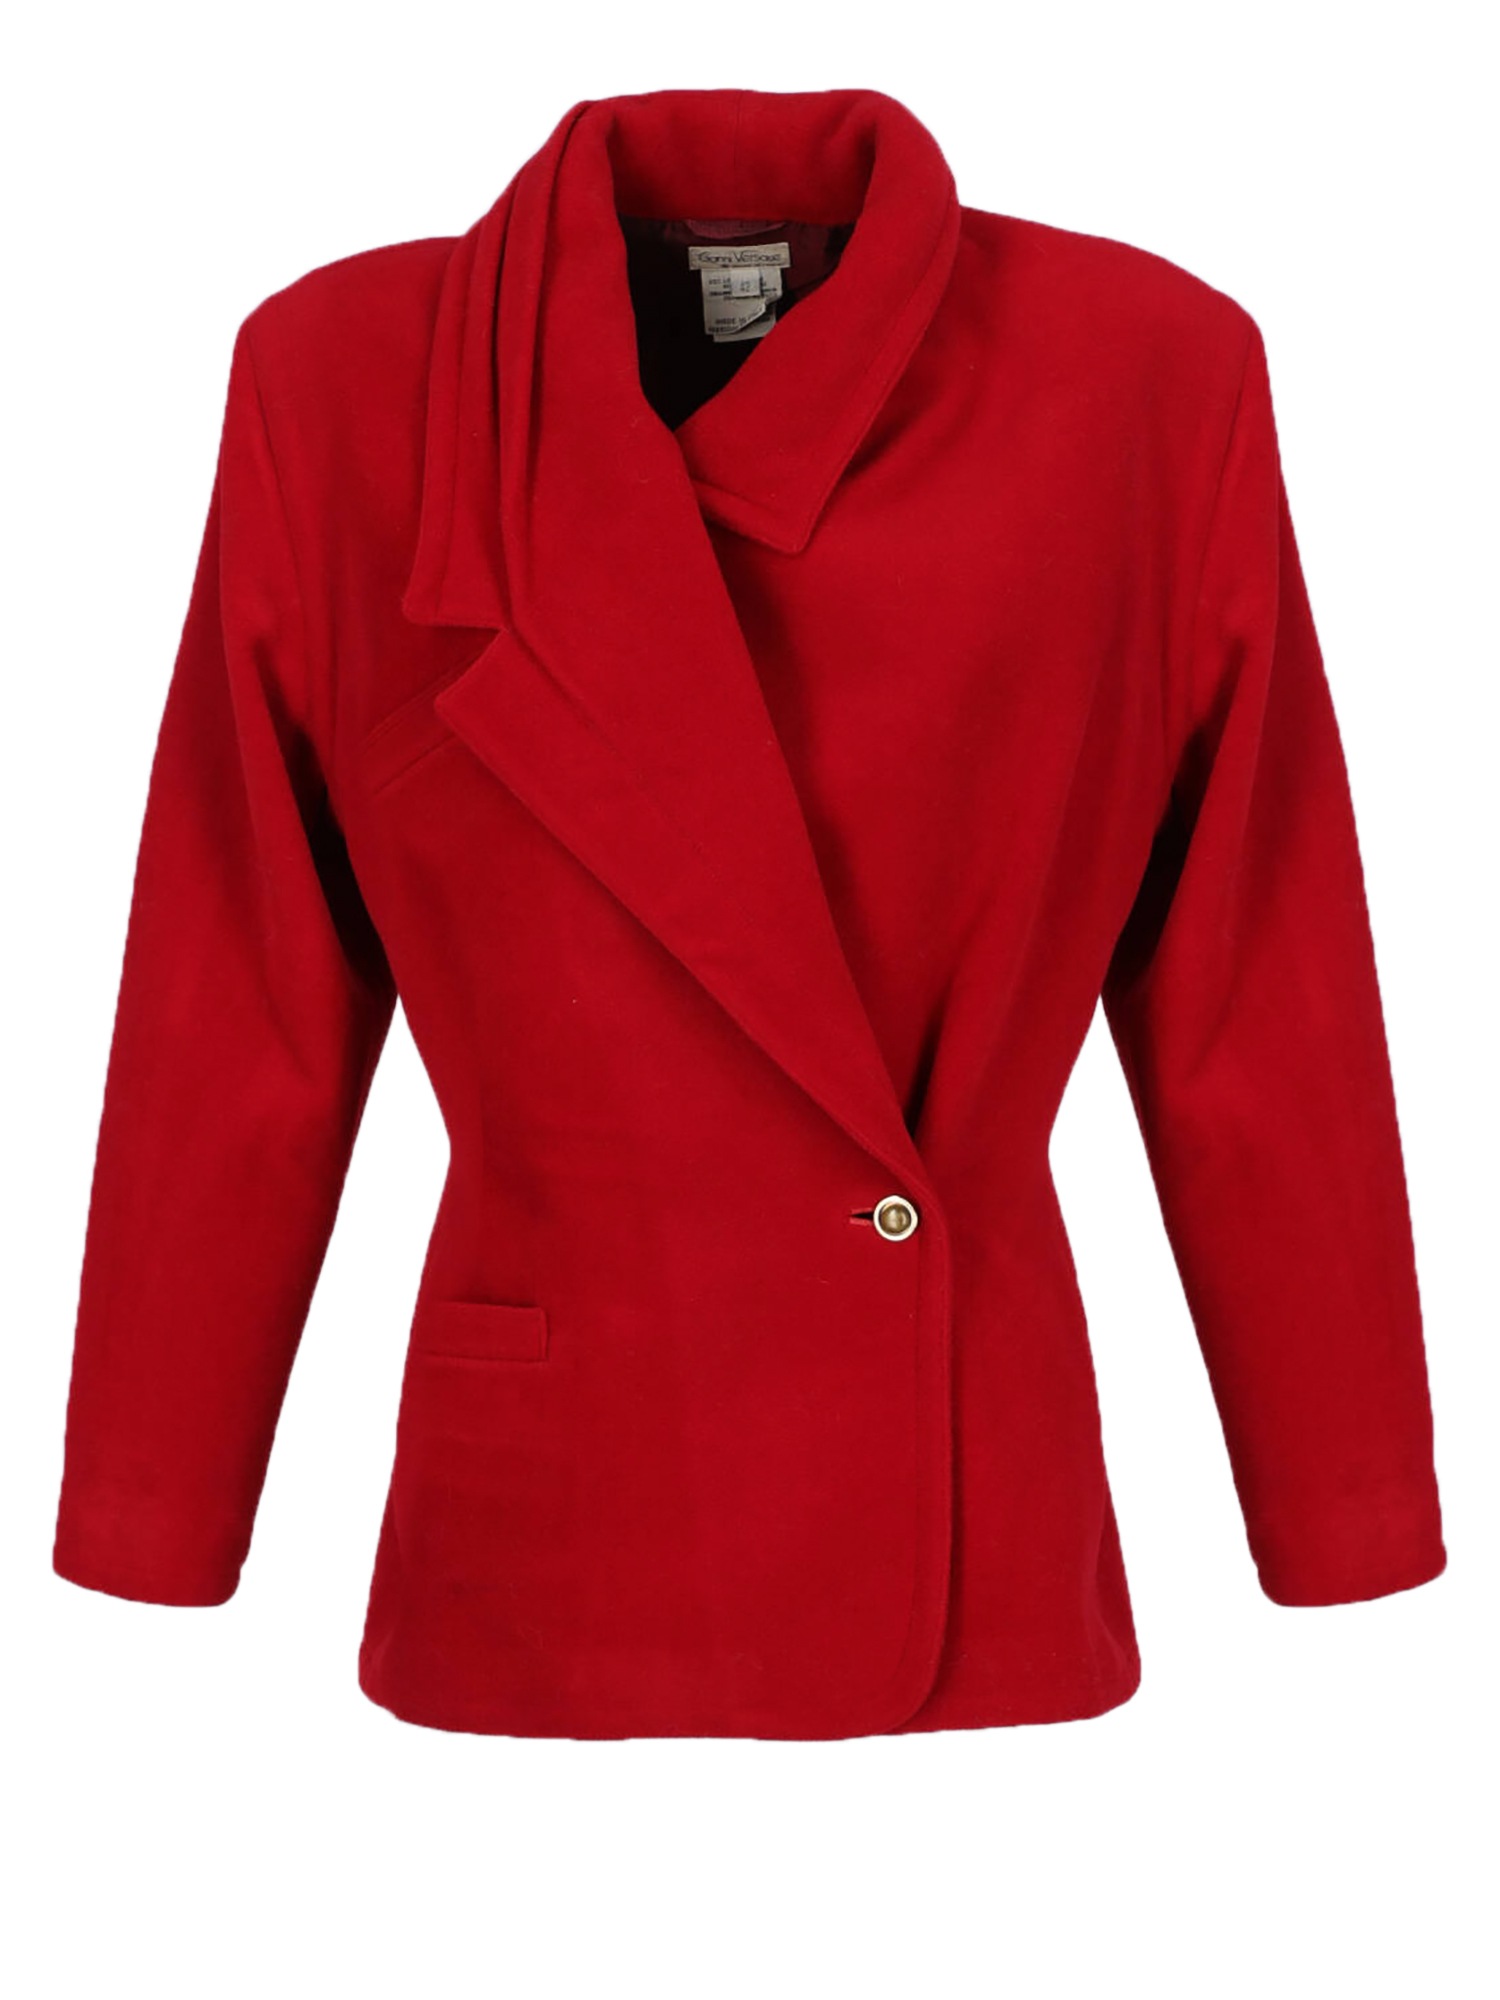 Manteaux Et Blousons Pour Femme - Versace - En Wool Red - Taille:  -